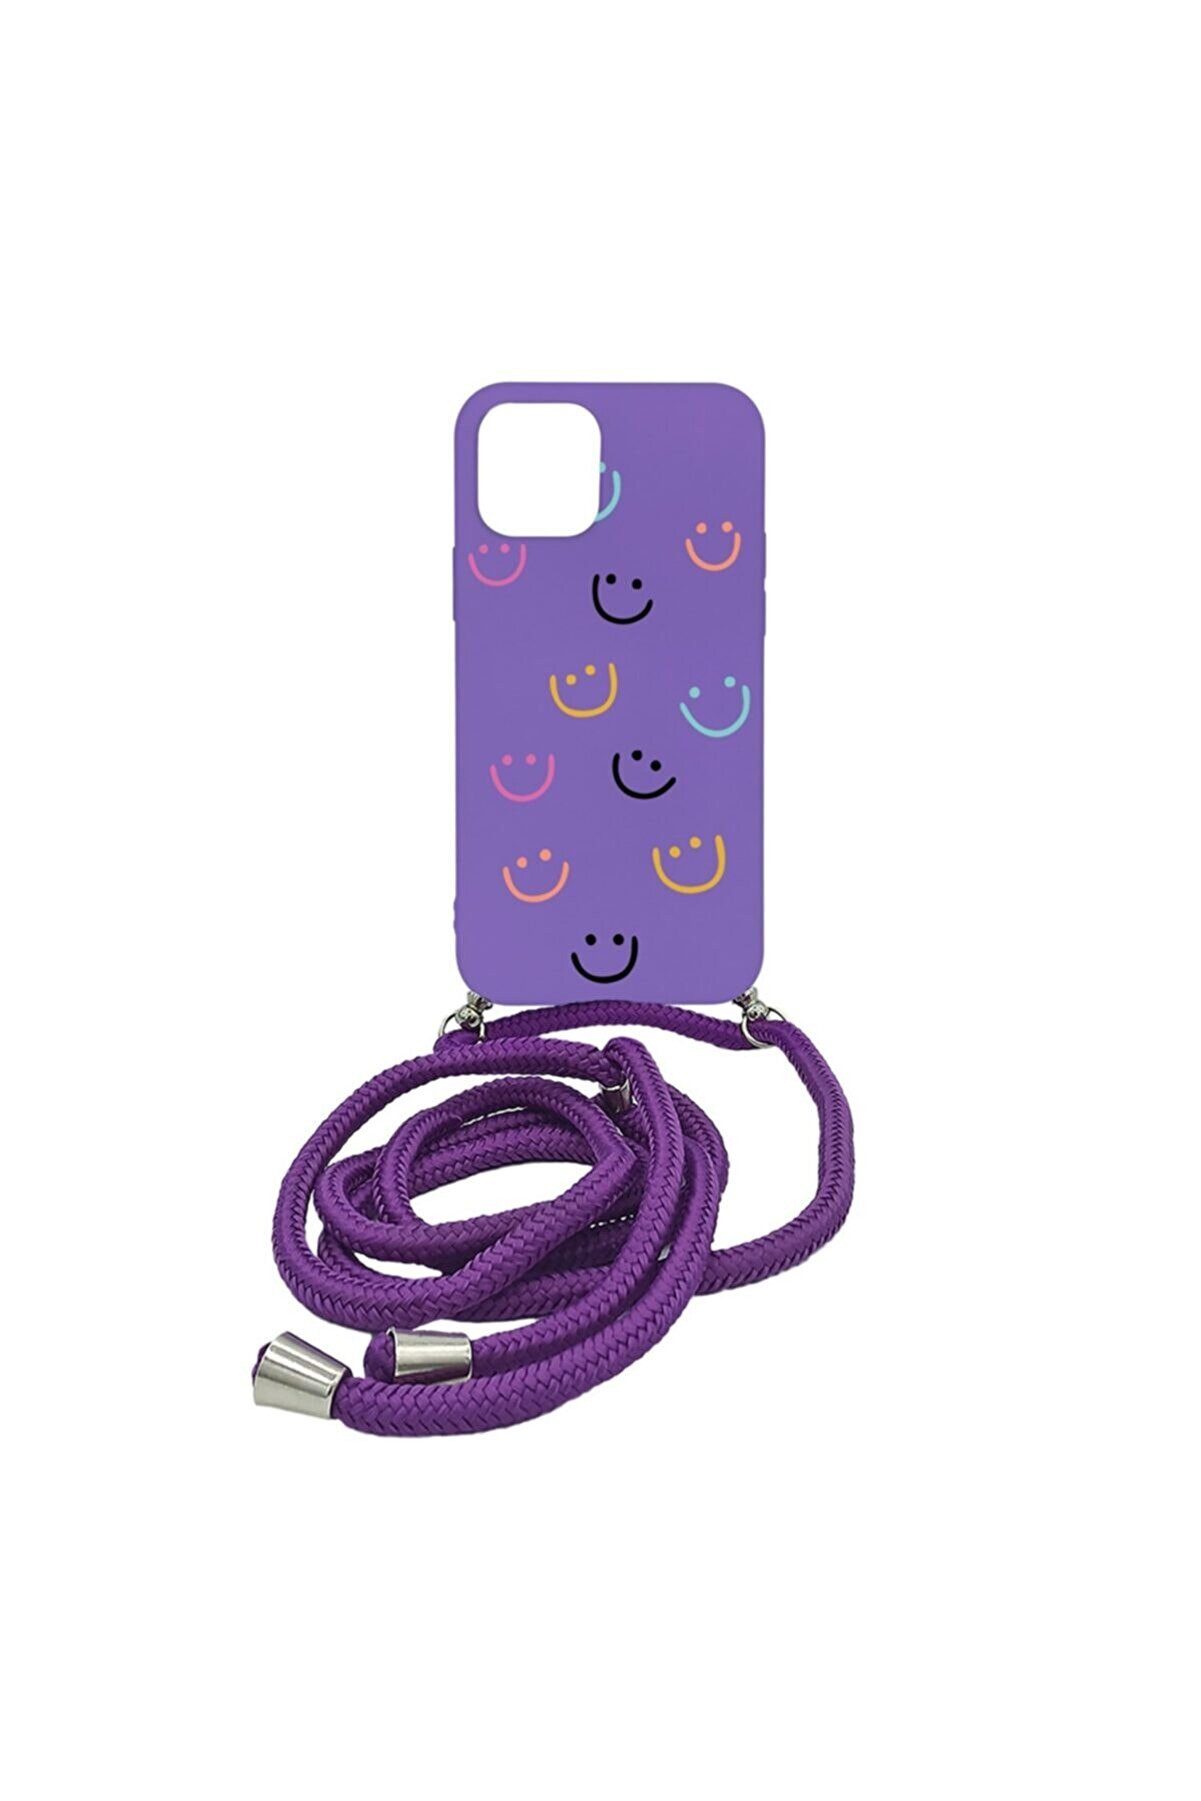 Merwish Apple Iphone 12 ( 6.1 Inç ) Happy Smile Içi Kadife Boyun Askılı Kılıf Mor